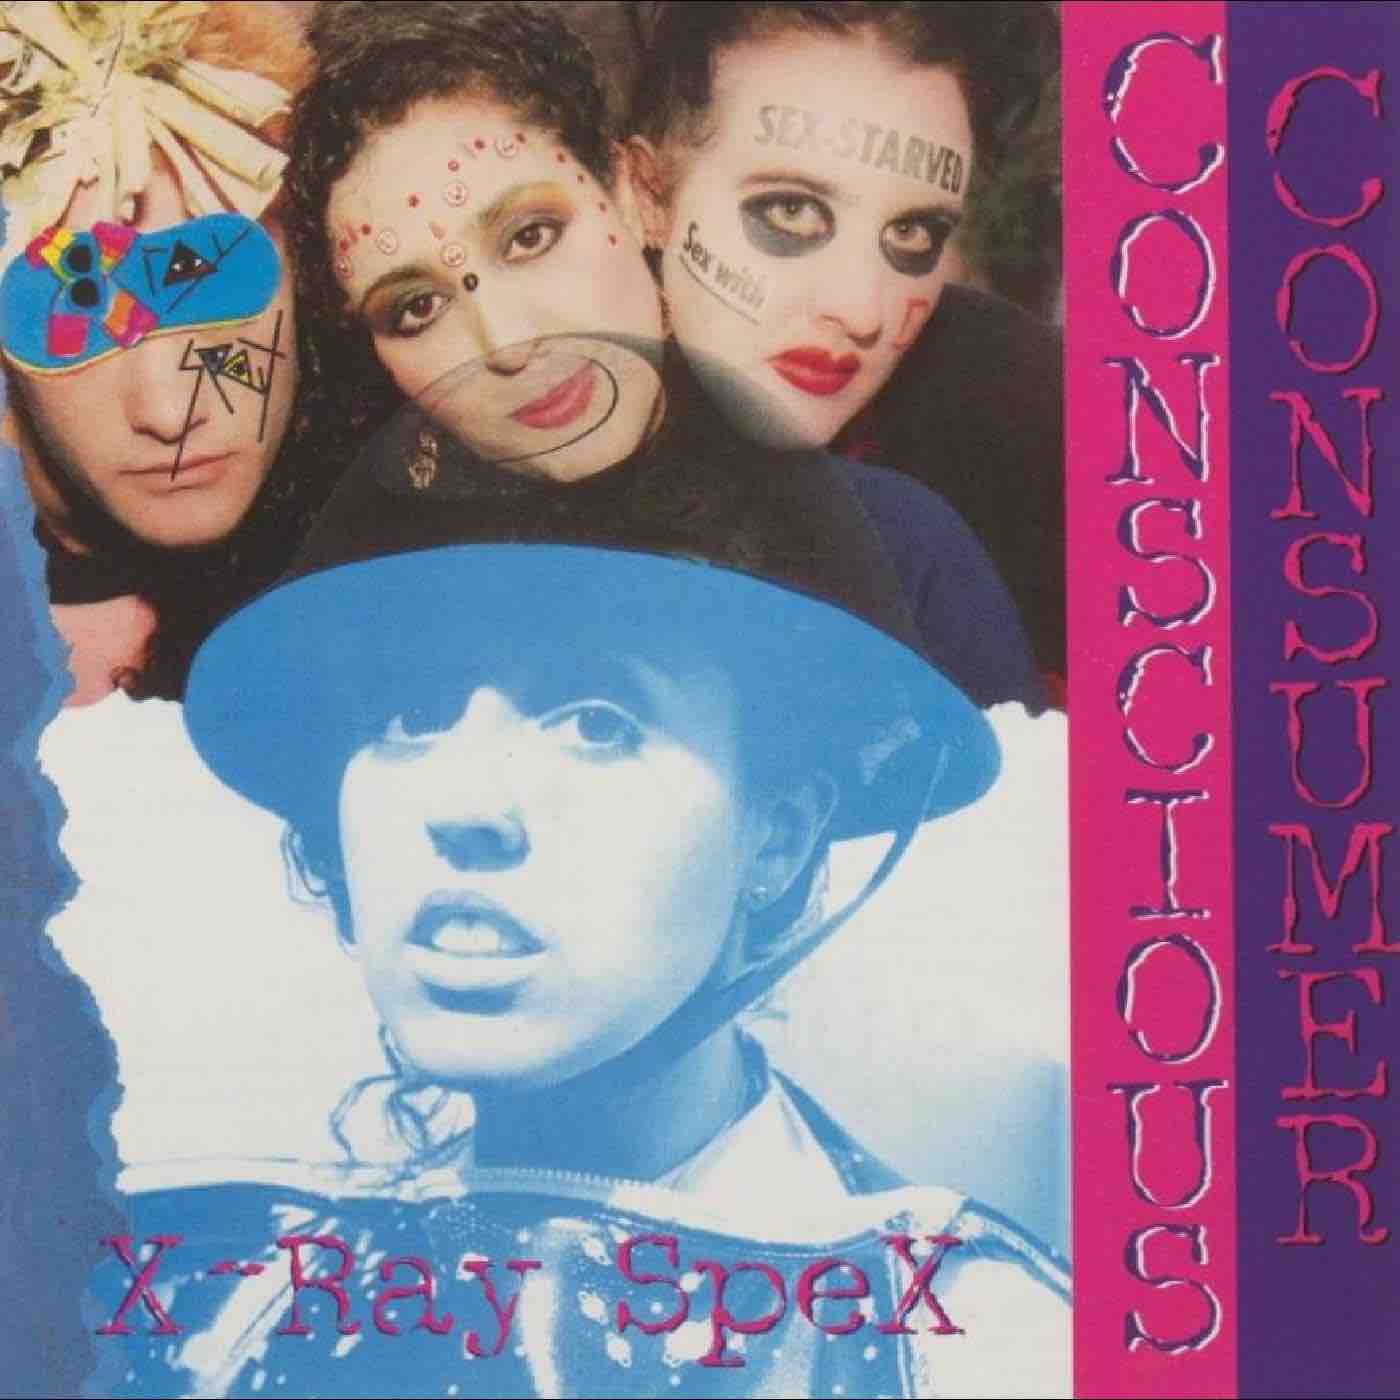 X-Ray Spex - Conscious Consumer (Eco) LP